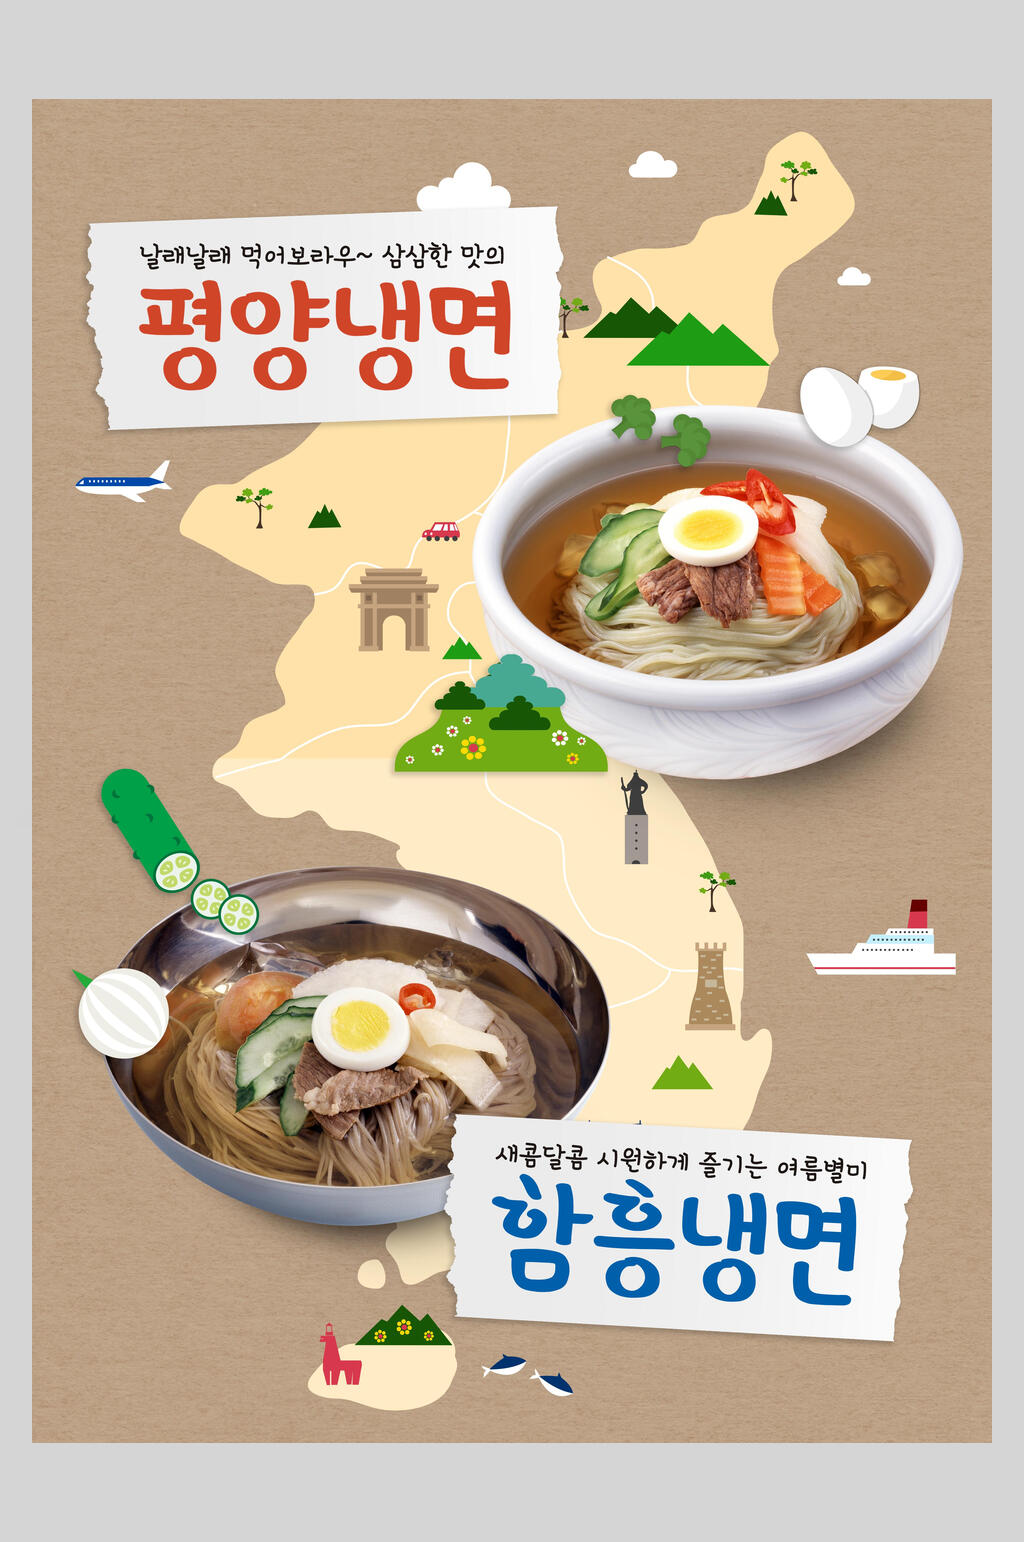 时尚高端韩国美食餐饮宣传海报